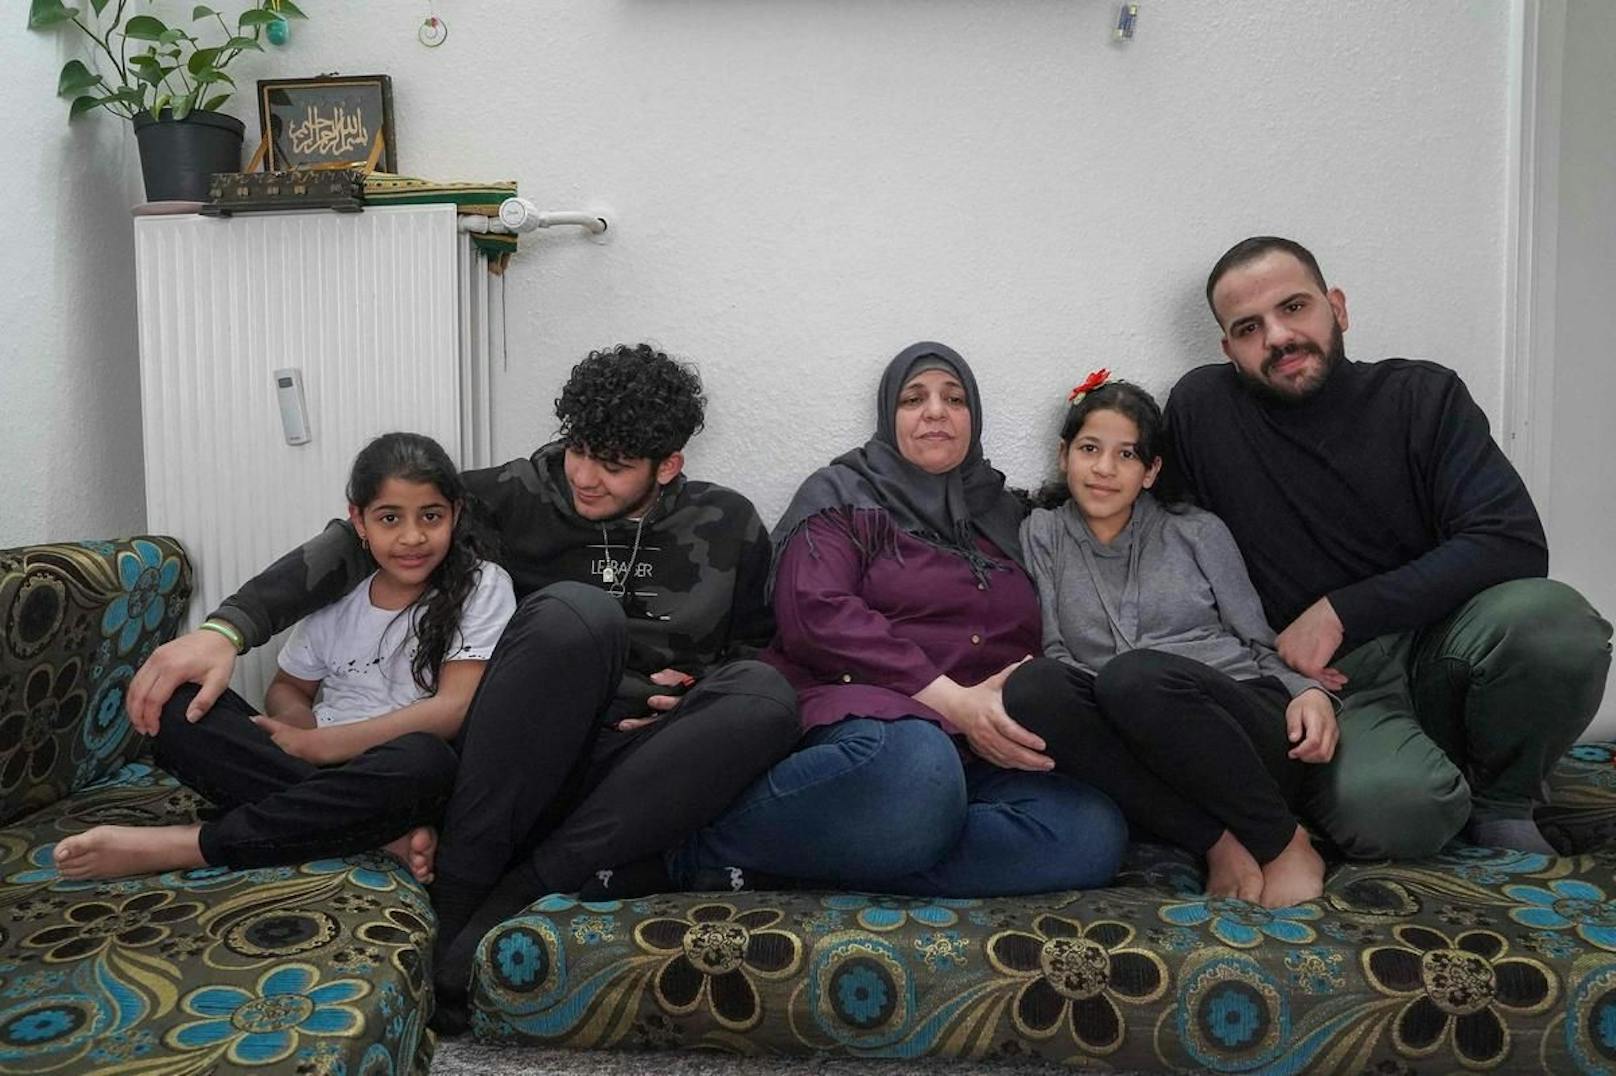 Menschen, die in Dänemark Asyl beantragen, wie diese Familie aus Syrien, die bereits in Dänemark lebt, würden demnach zuerst in Drittstaaten auf die Genehmigung ihres Gesuchs warten müssen.